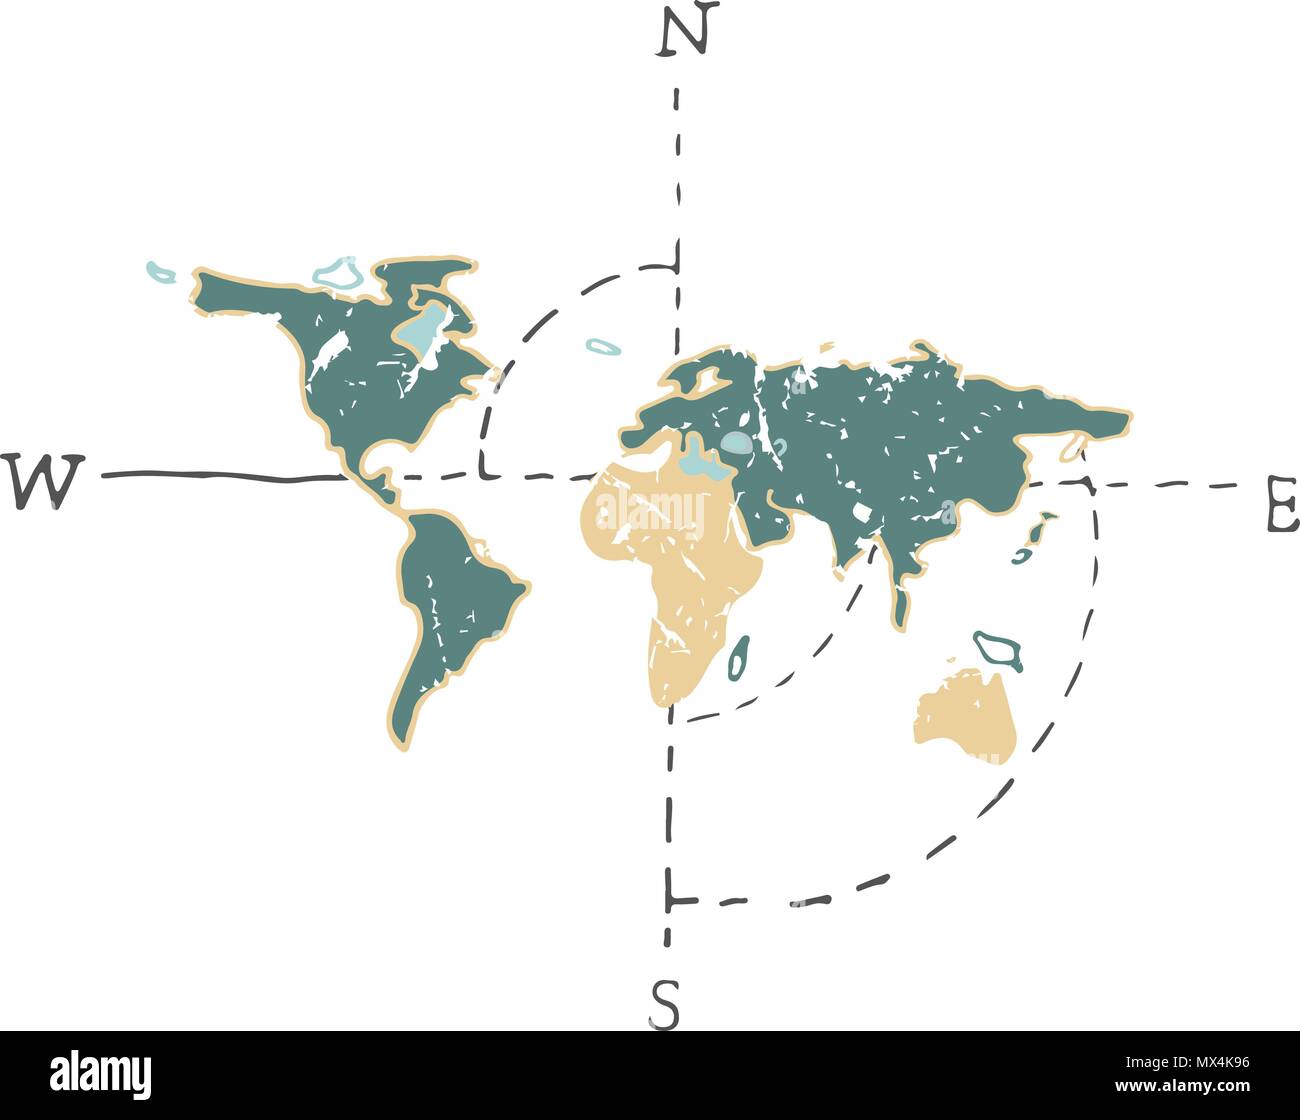 Weltkarte Weltkarten vector Abbildung Farbe grün gelb Kartograph auf weißem Hintergrund Stock Vektor